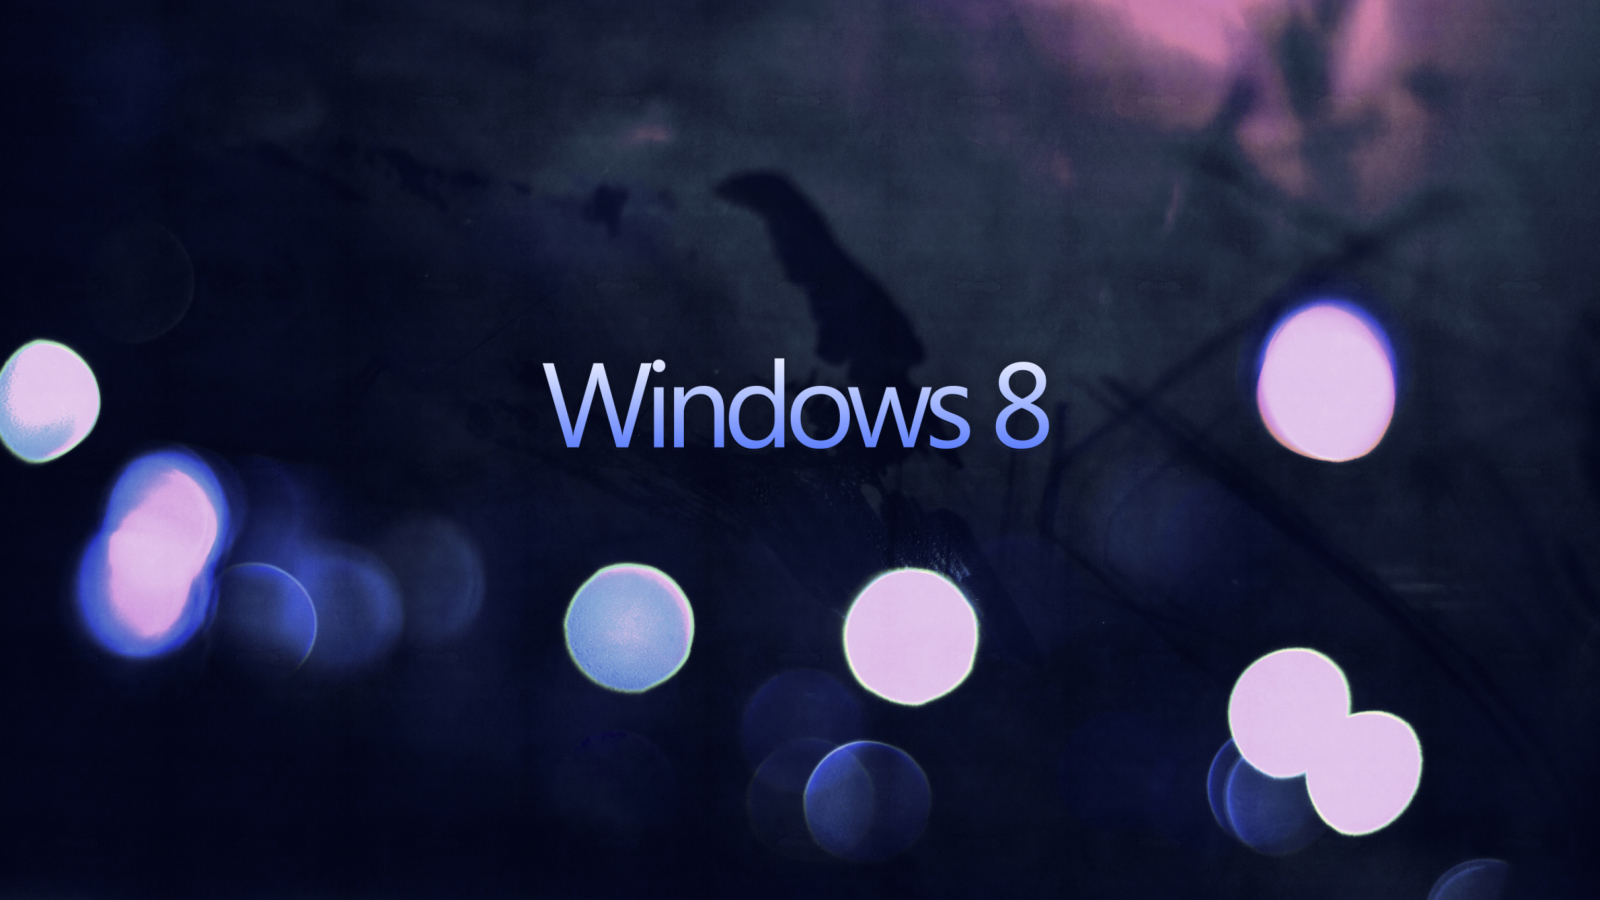 Windows 8 - Hi-Tech screenshot #1 1600x900